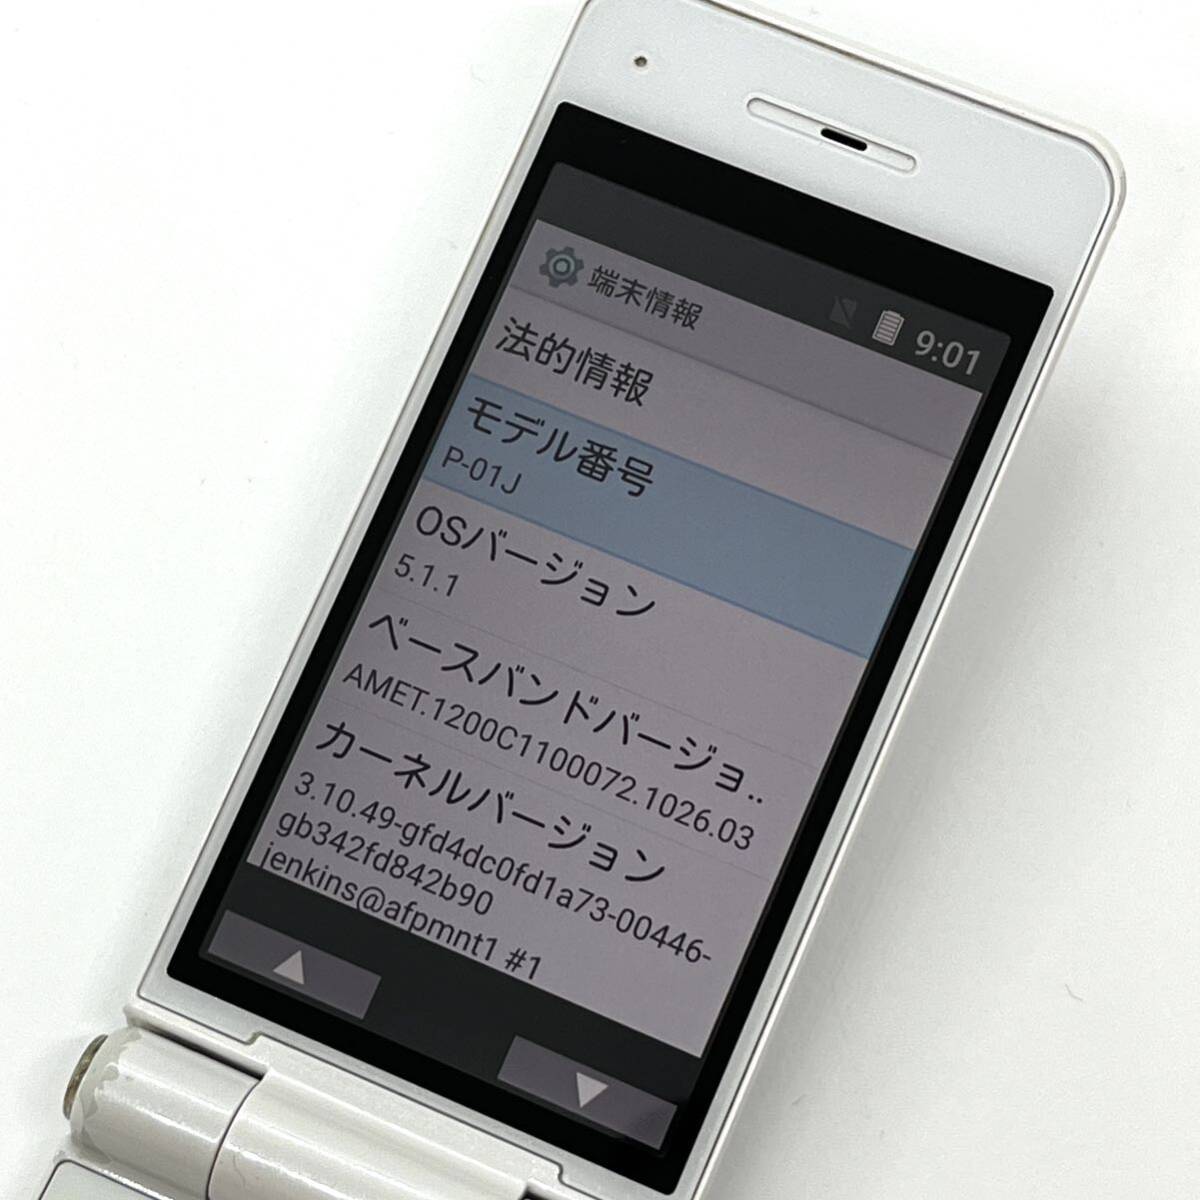 P-smart мобильный телефон P-01J белый docomo SIM свободный 4G соответствует one кнопка открытый 1 SEG gala ho корпус бесплатная доставка Y13MR